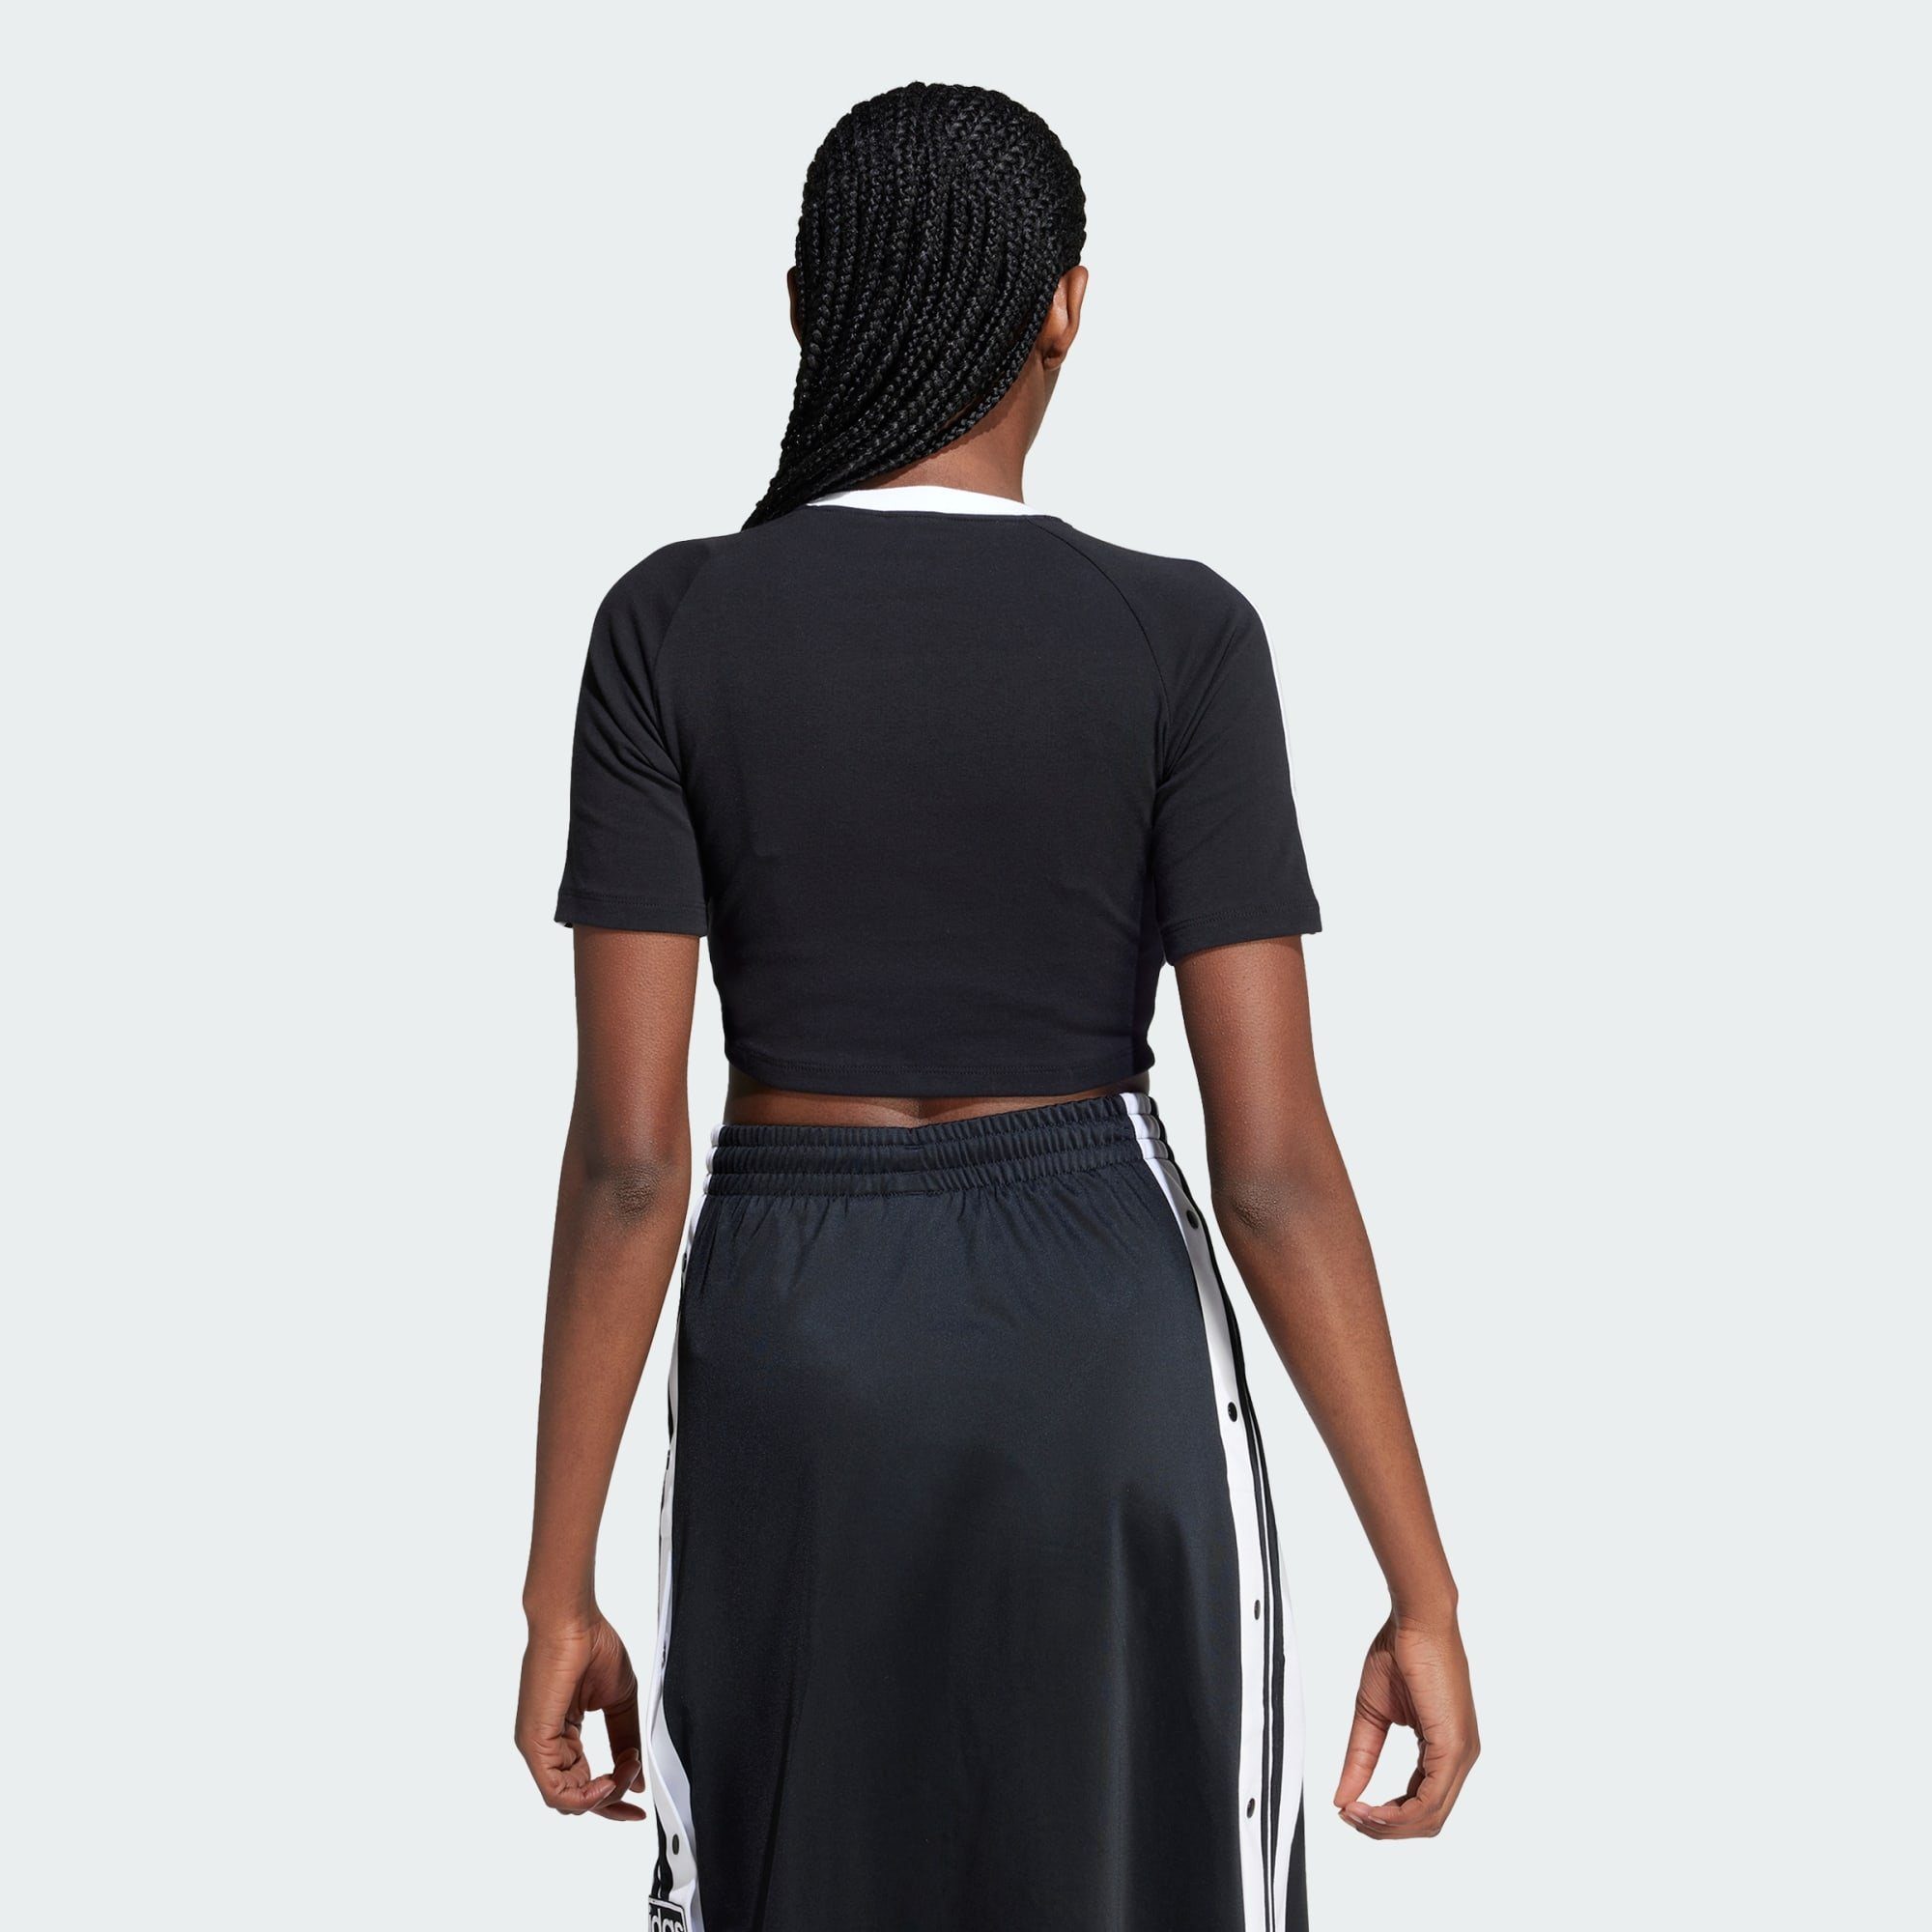 adidas Originals T-Shirt T-SHIRT BABY 3-STREIFEN Black